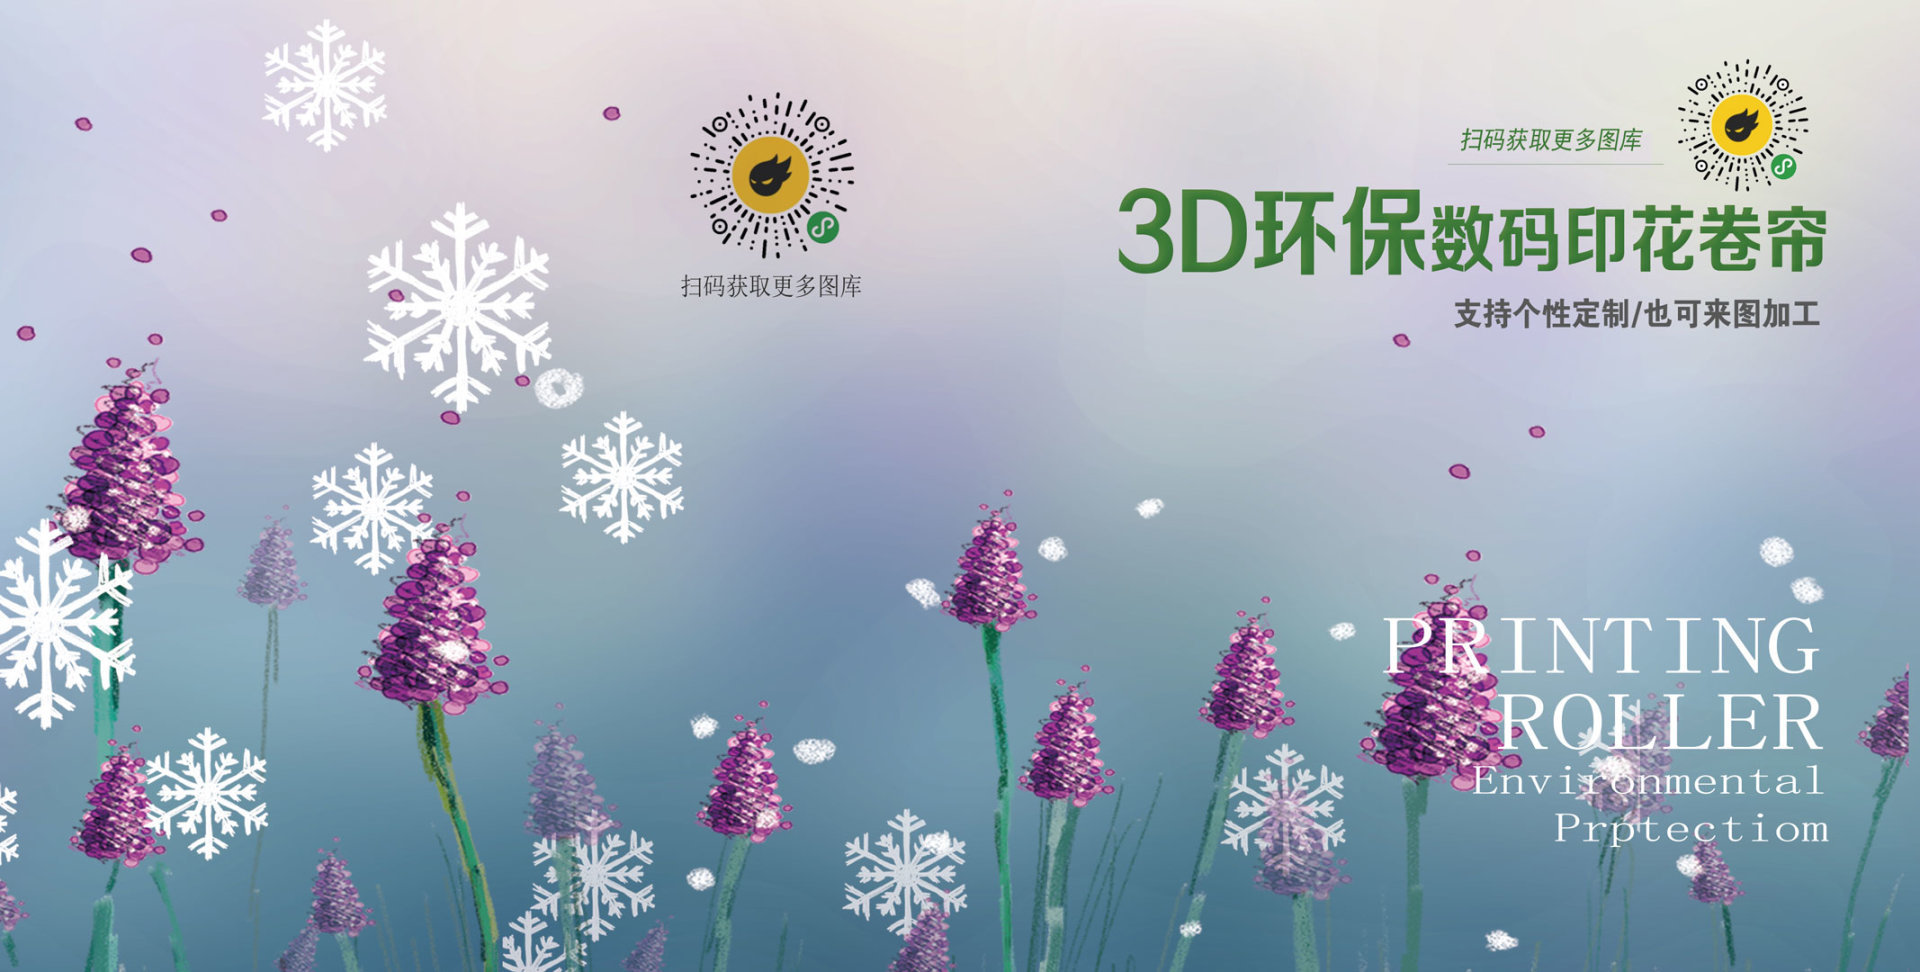 3D环保数码印花卷帘